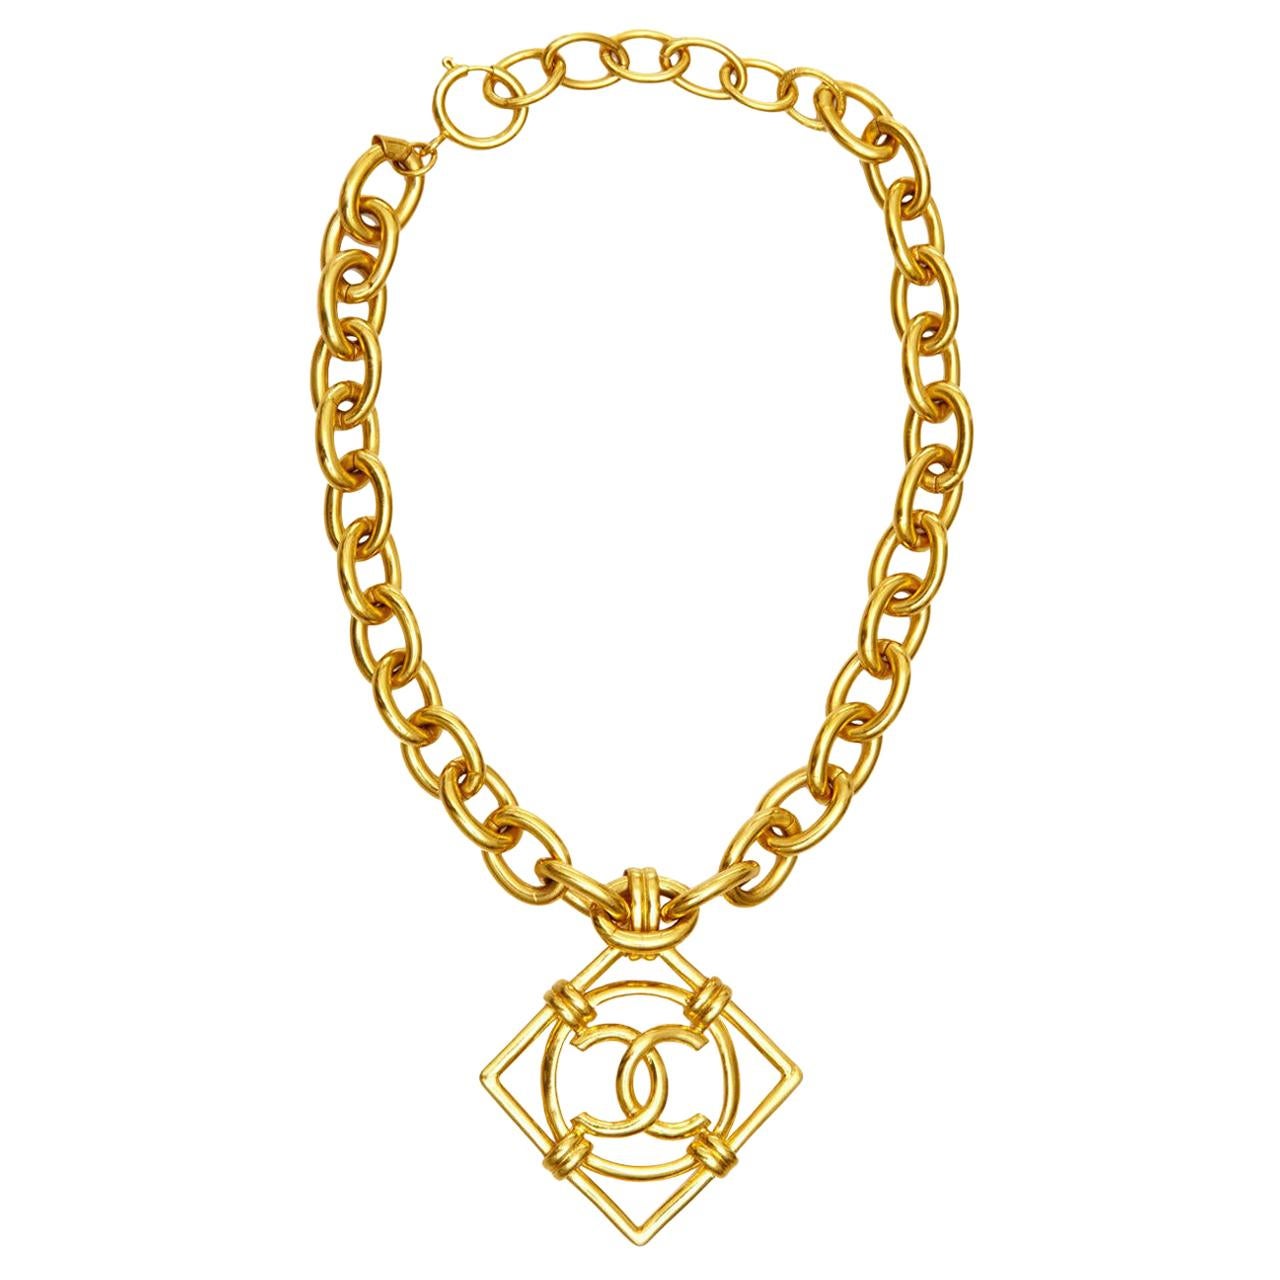 1990s Chanel Double CC Pendant Necklace By Victoire De Castellane